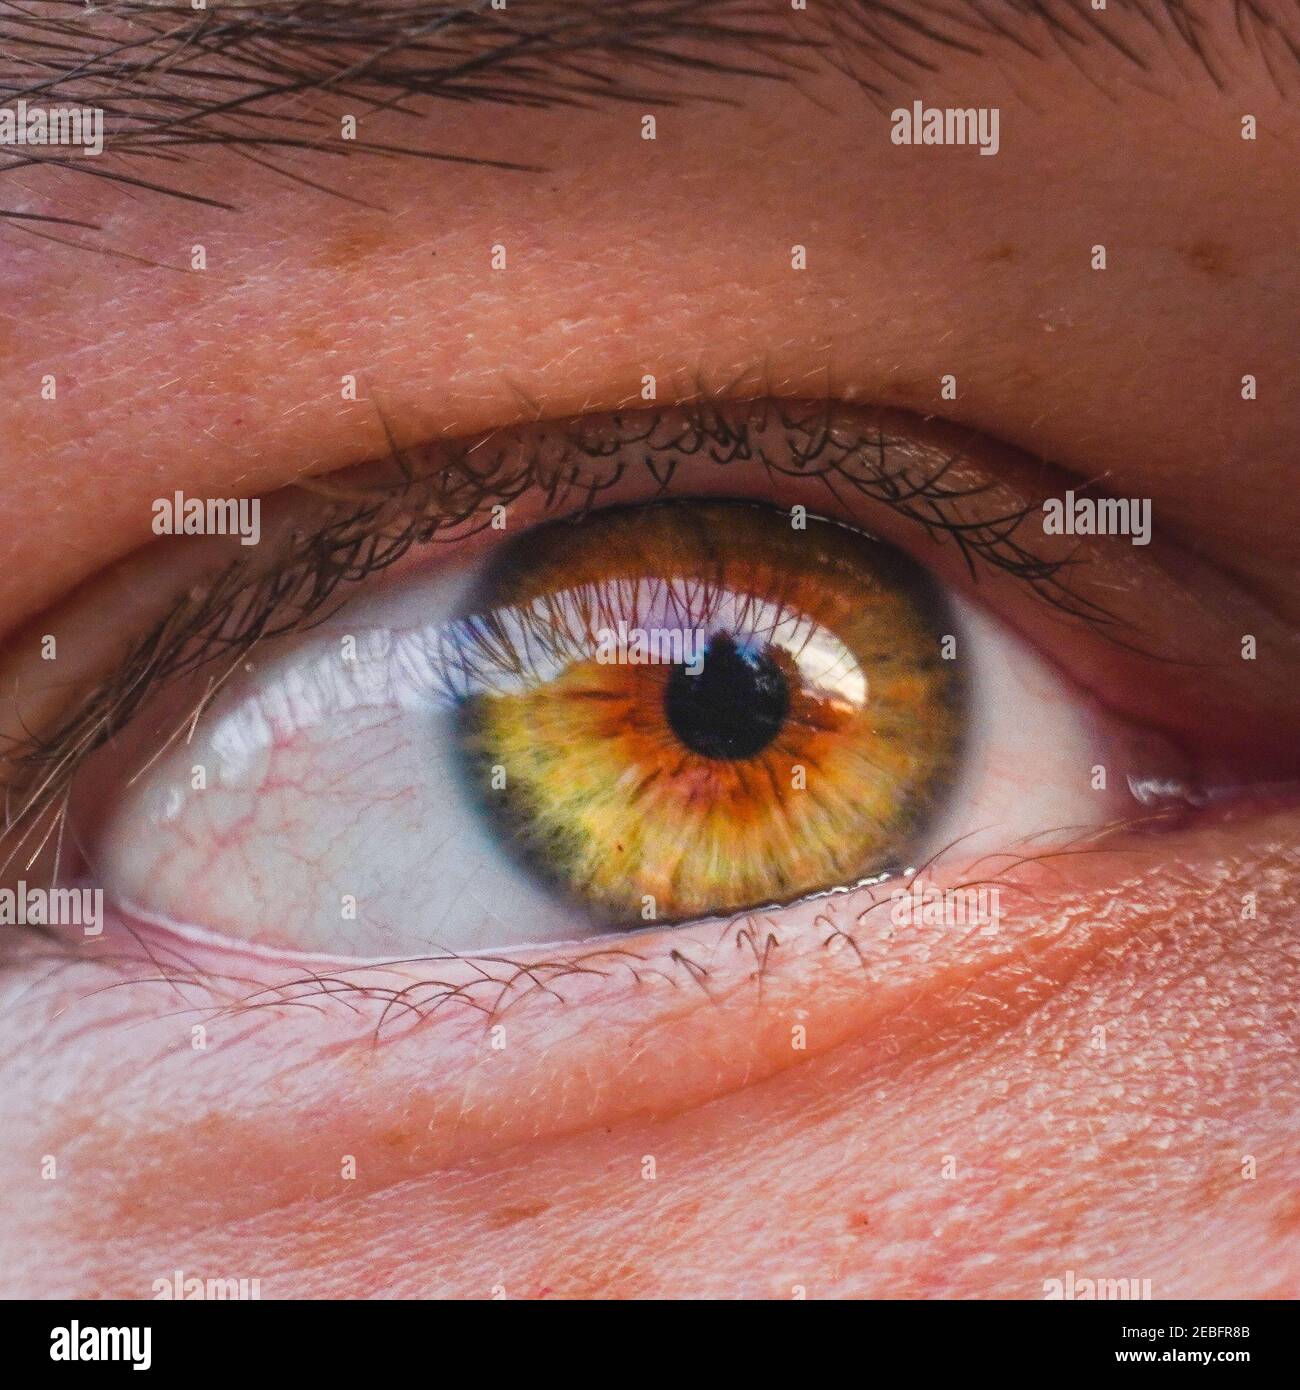 Occhi nocciola immagini e fotografie stock ad alta risoluzione - Alamy